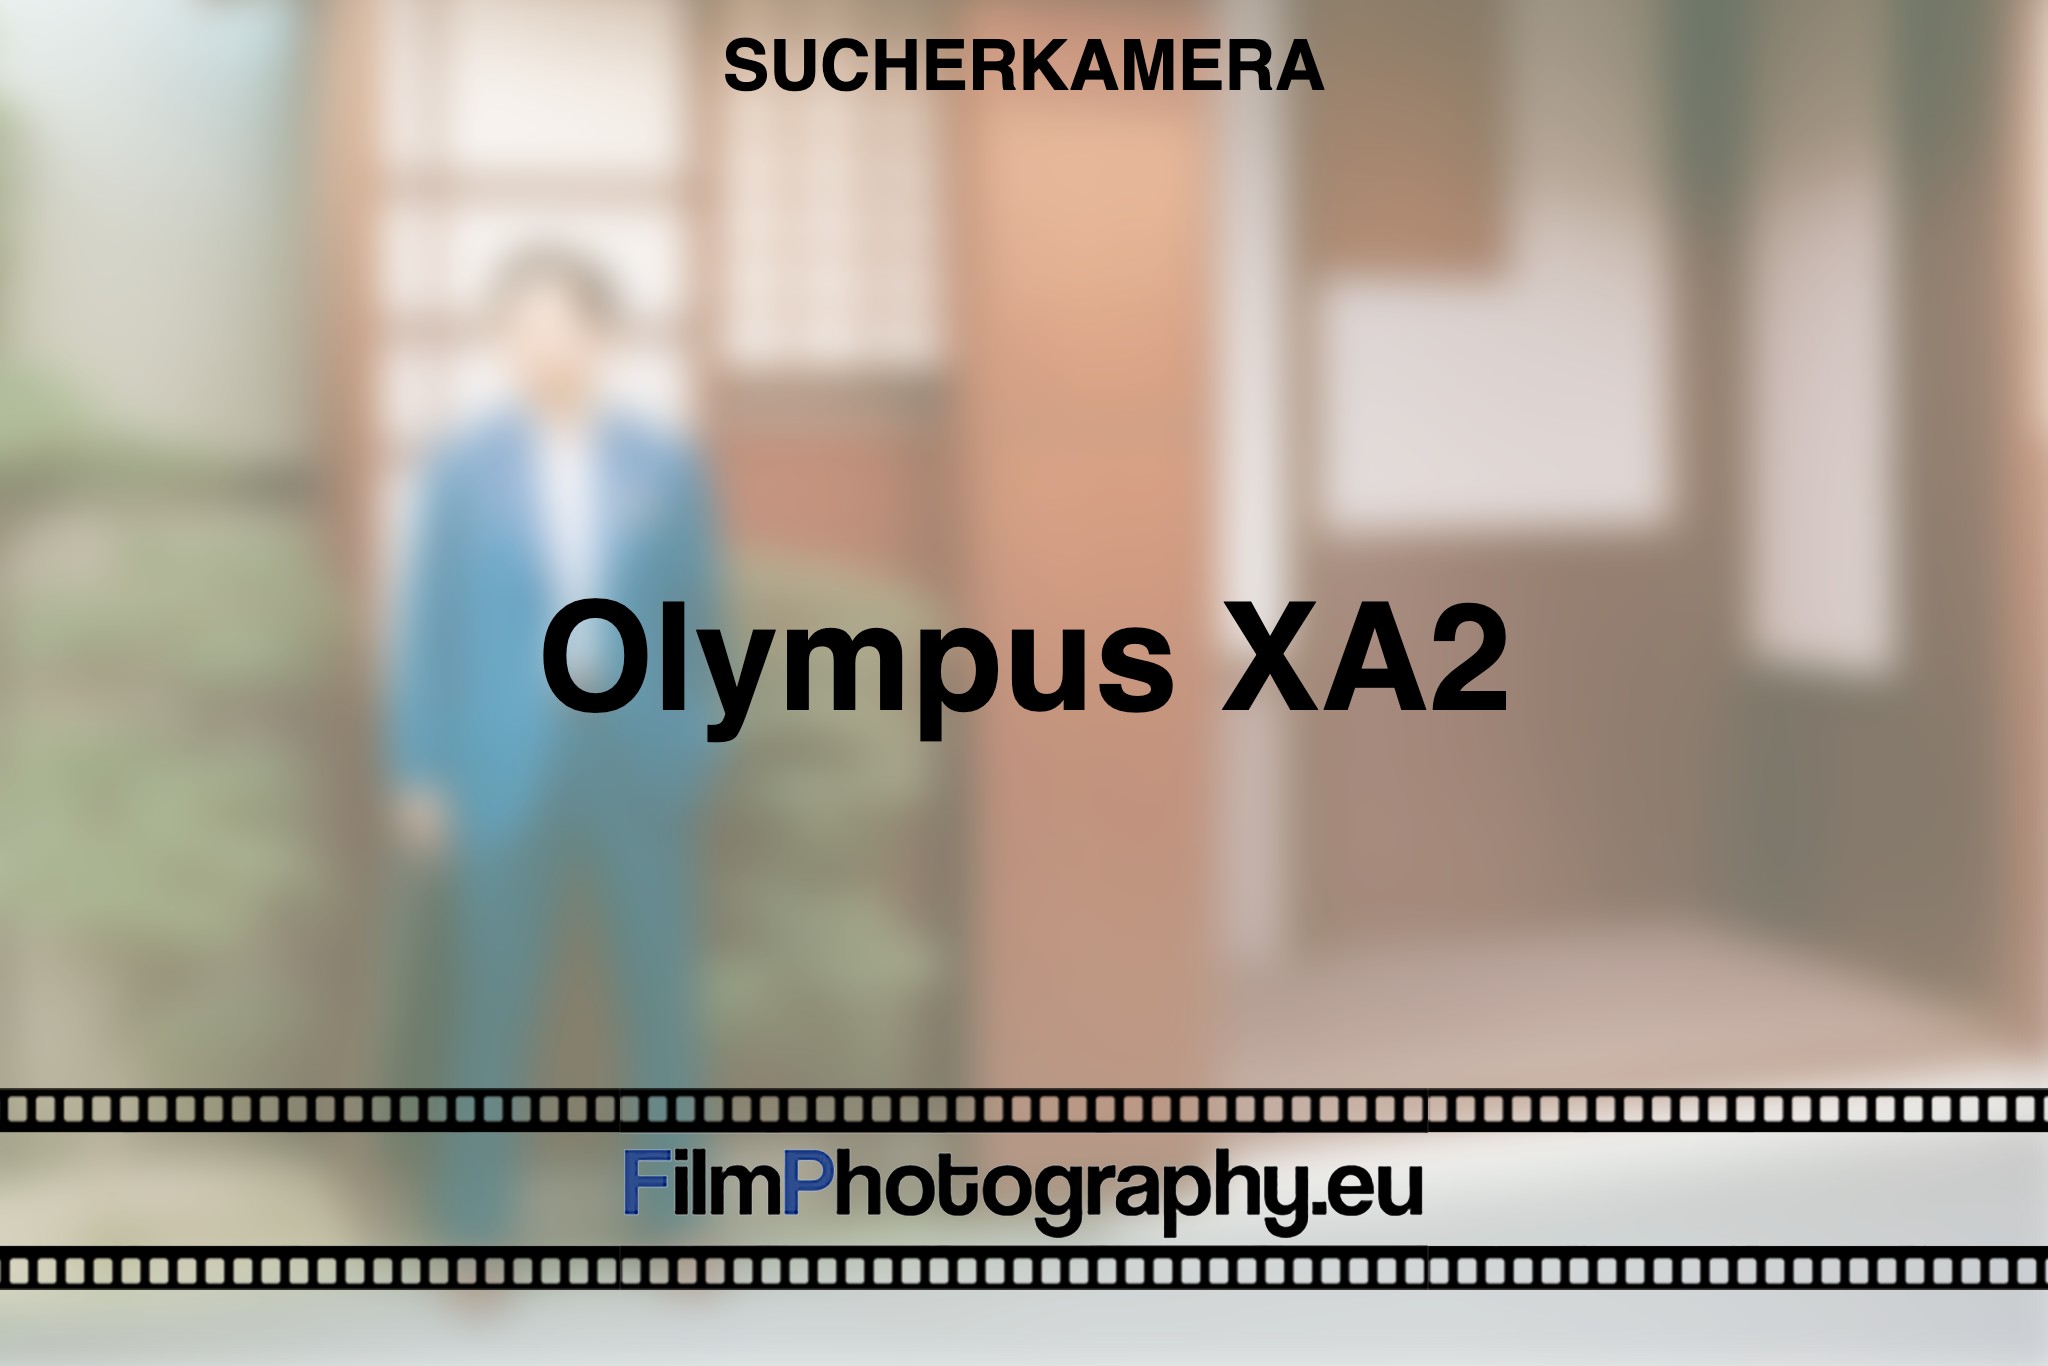 olympus-xa2-sucherkamera-bnv